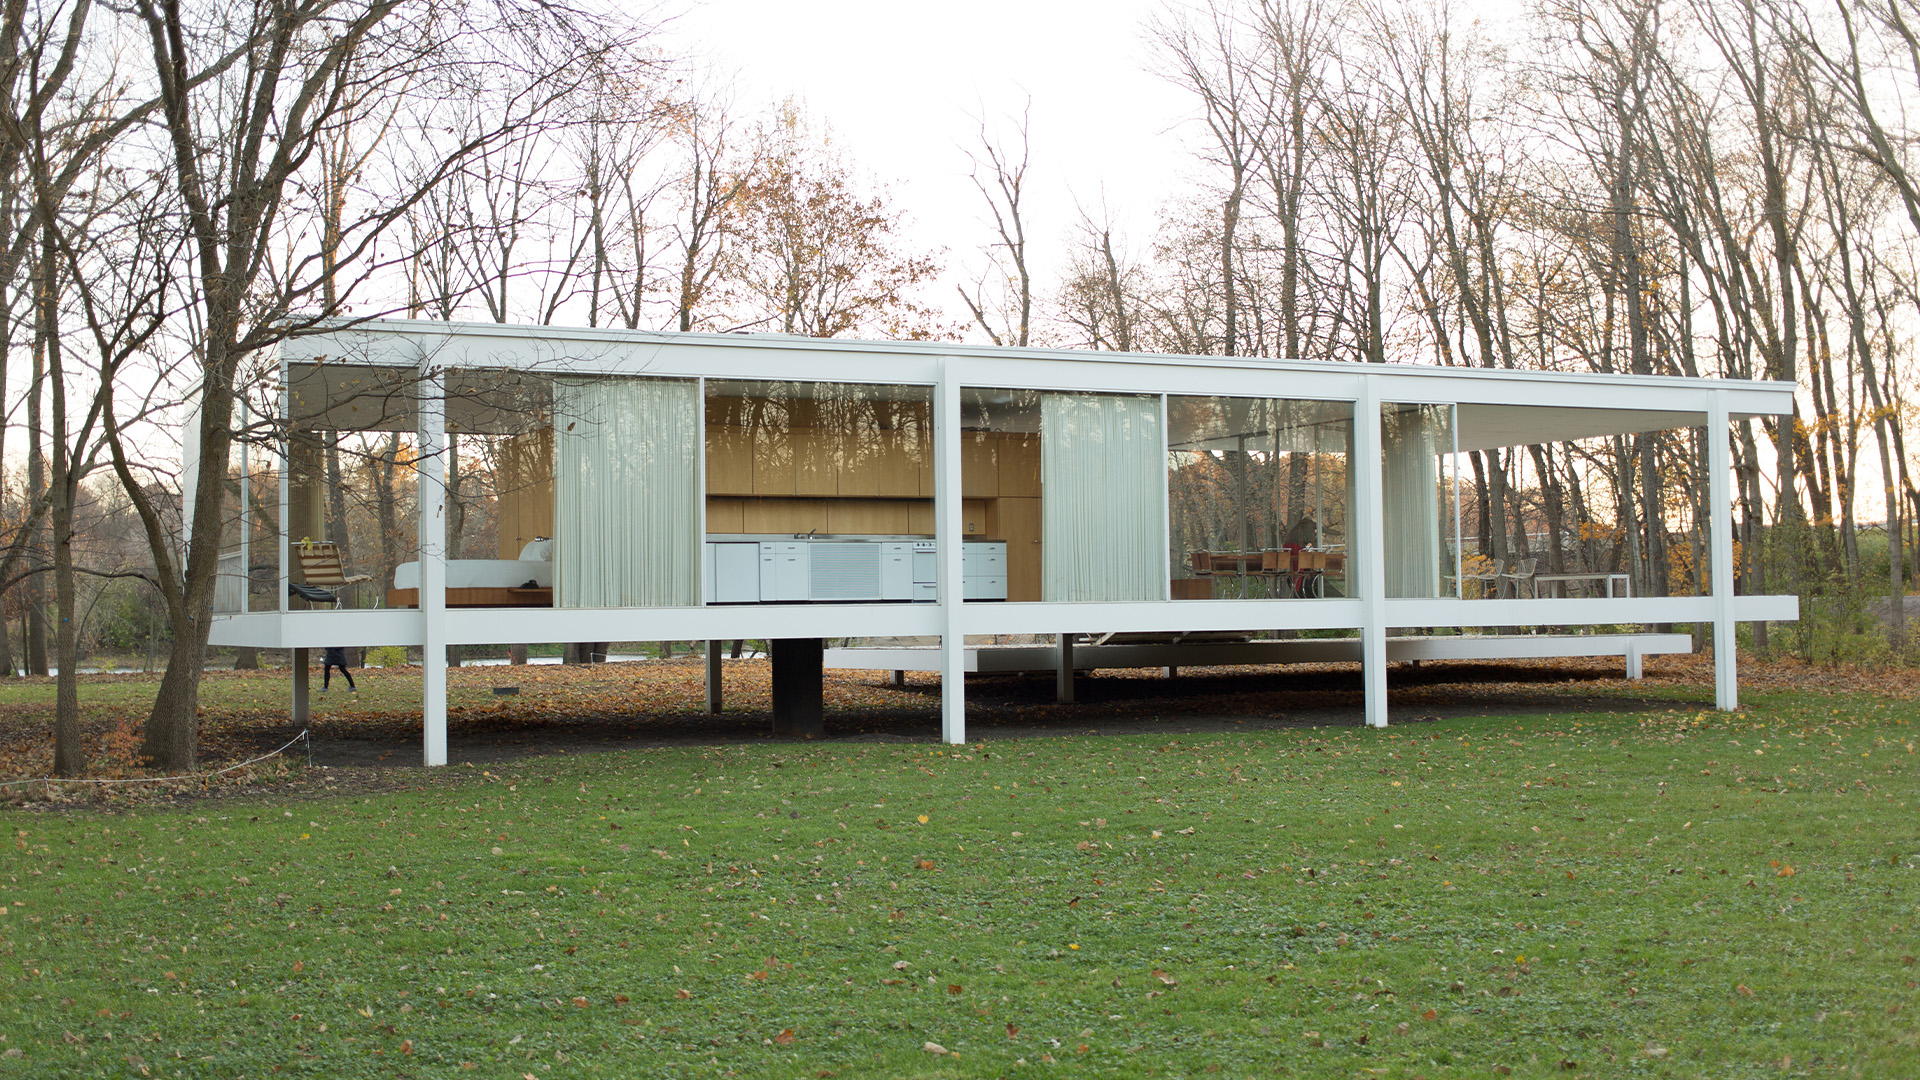 Esta obra es de Mies Van der Roh, uno de nuestros arquitectos más famosos del mundo favoritos